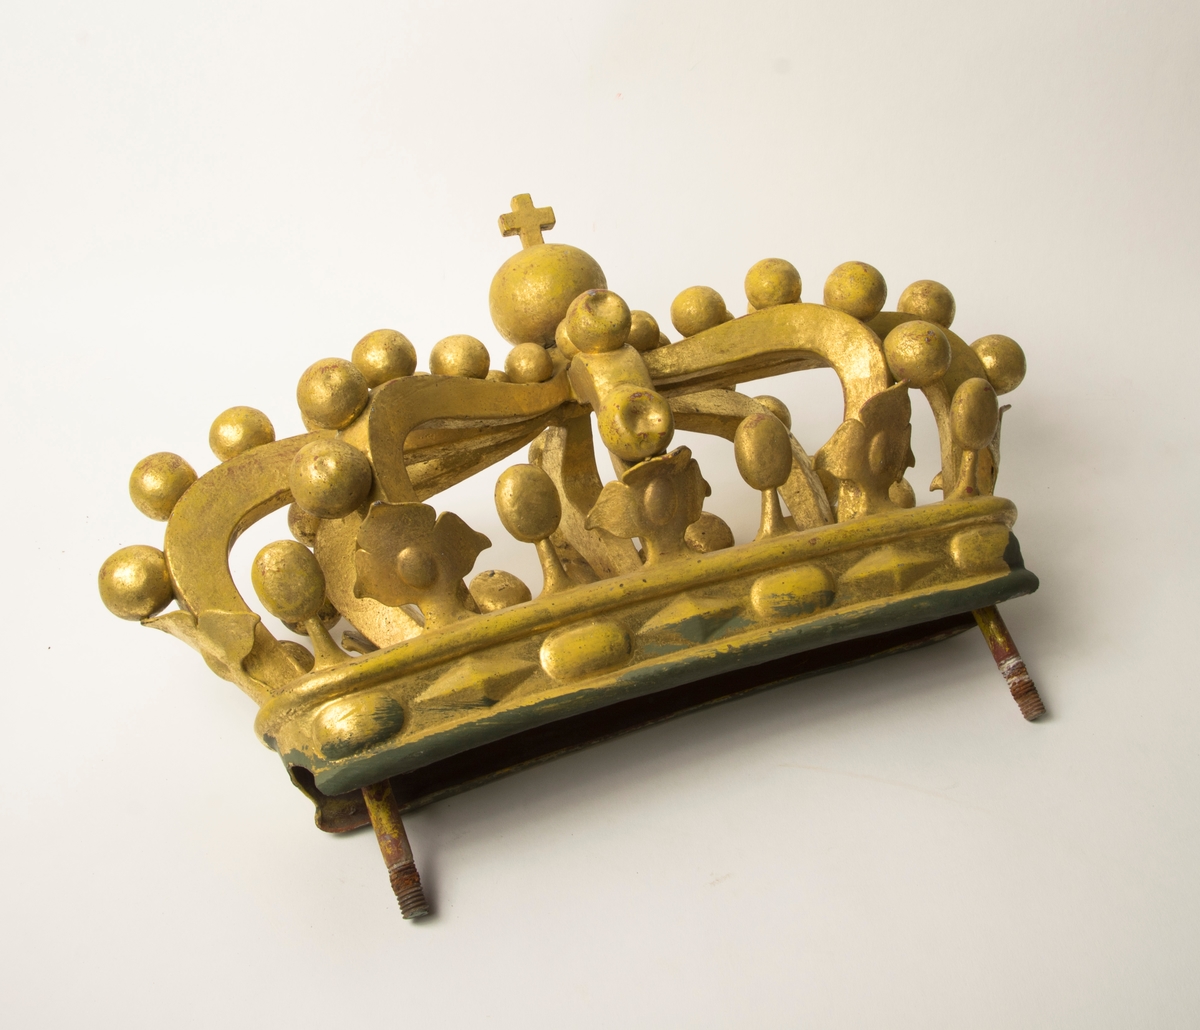 Ornament i form av en krona i förgylld metall. Kronan har två metallskruvar nedtill för anfästning. Förgyllningen har en bolus-färgad grundering.